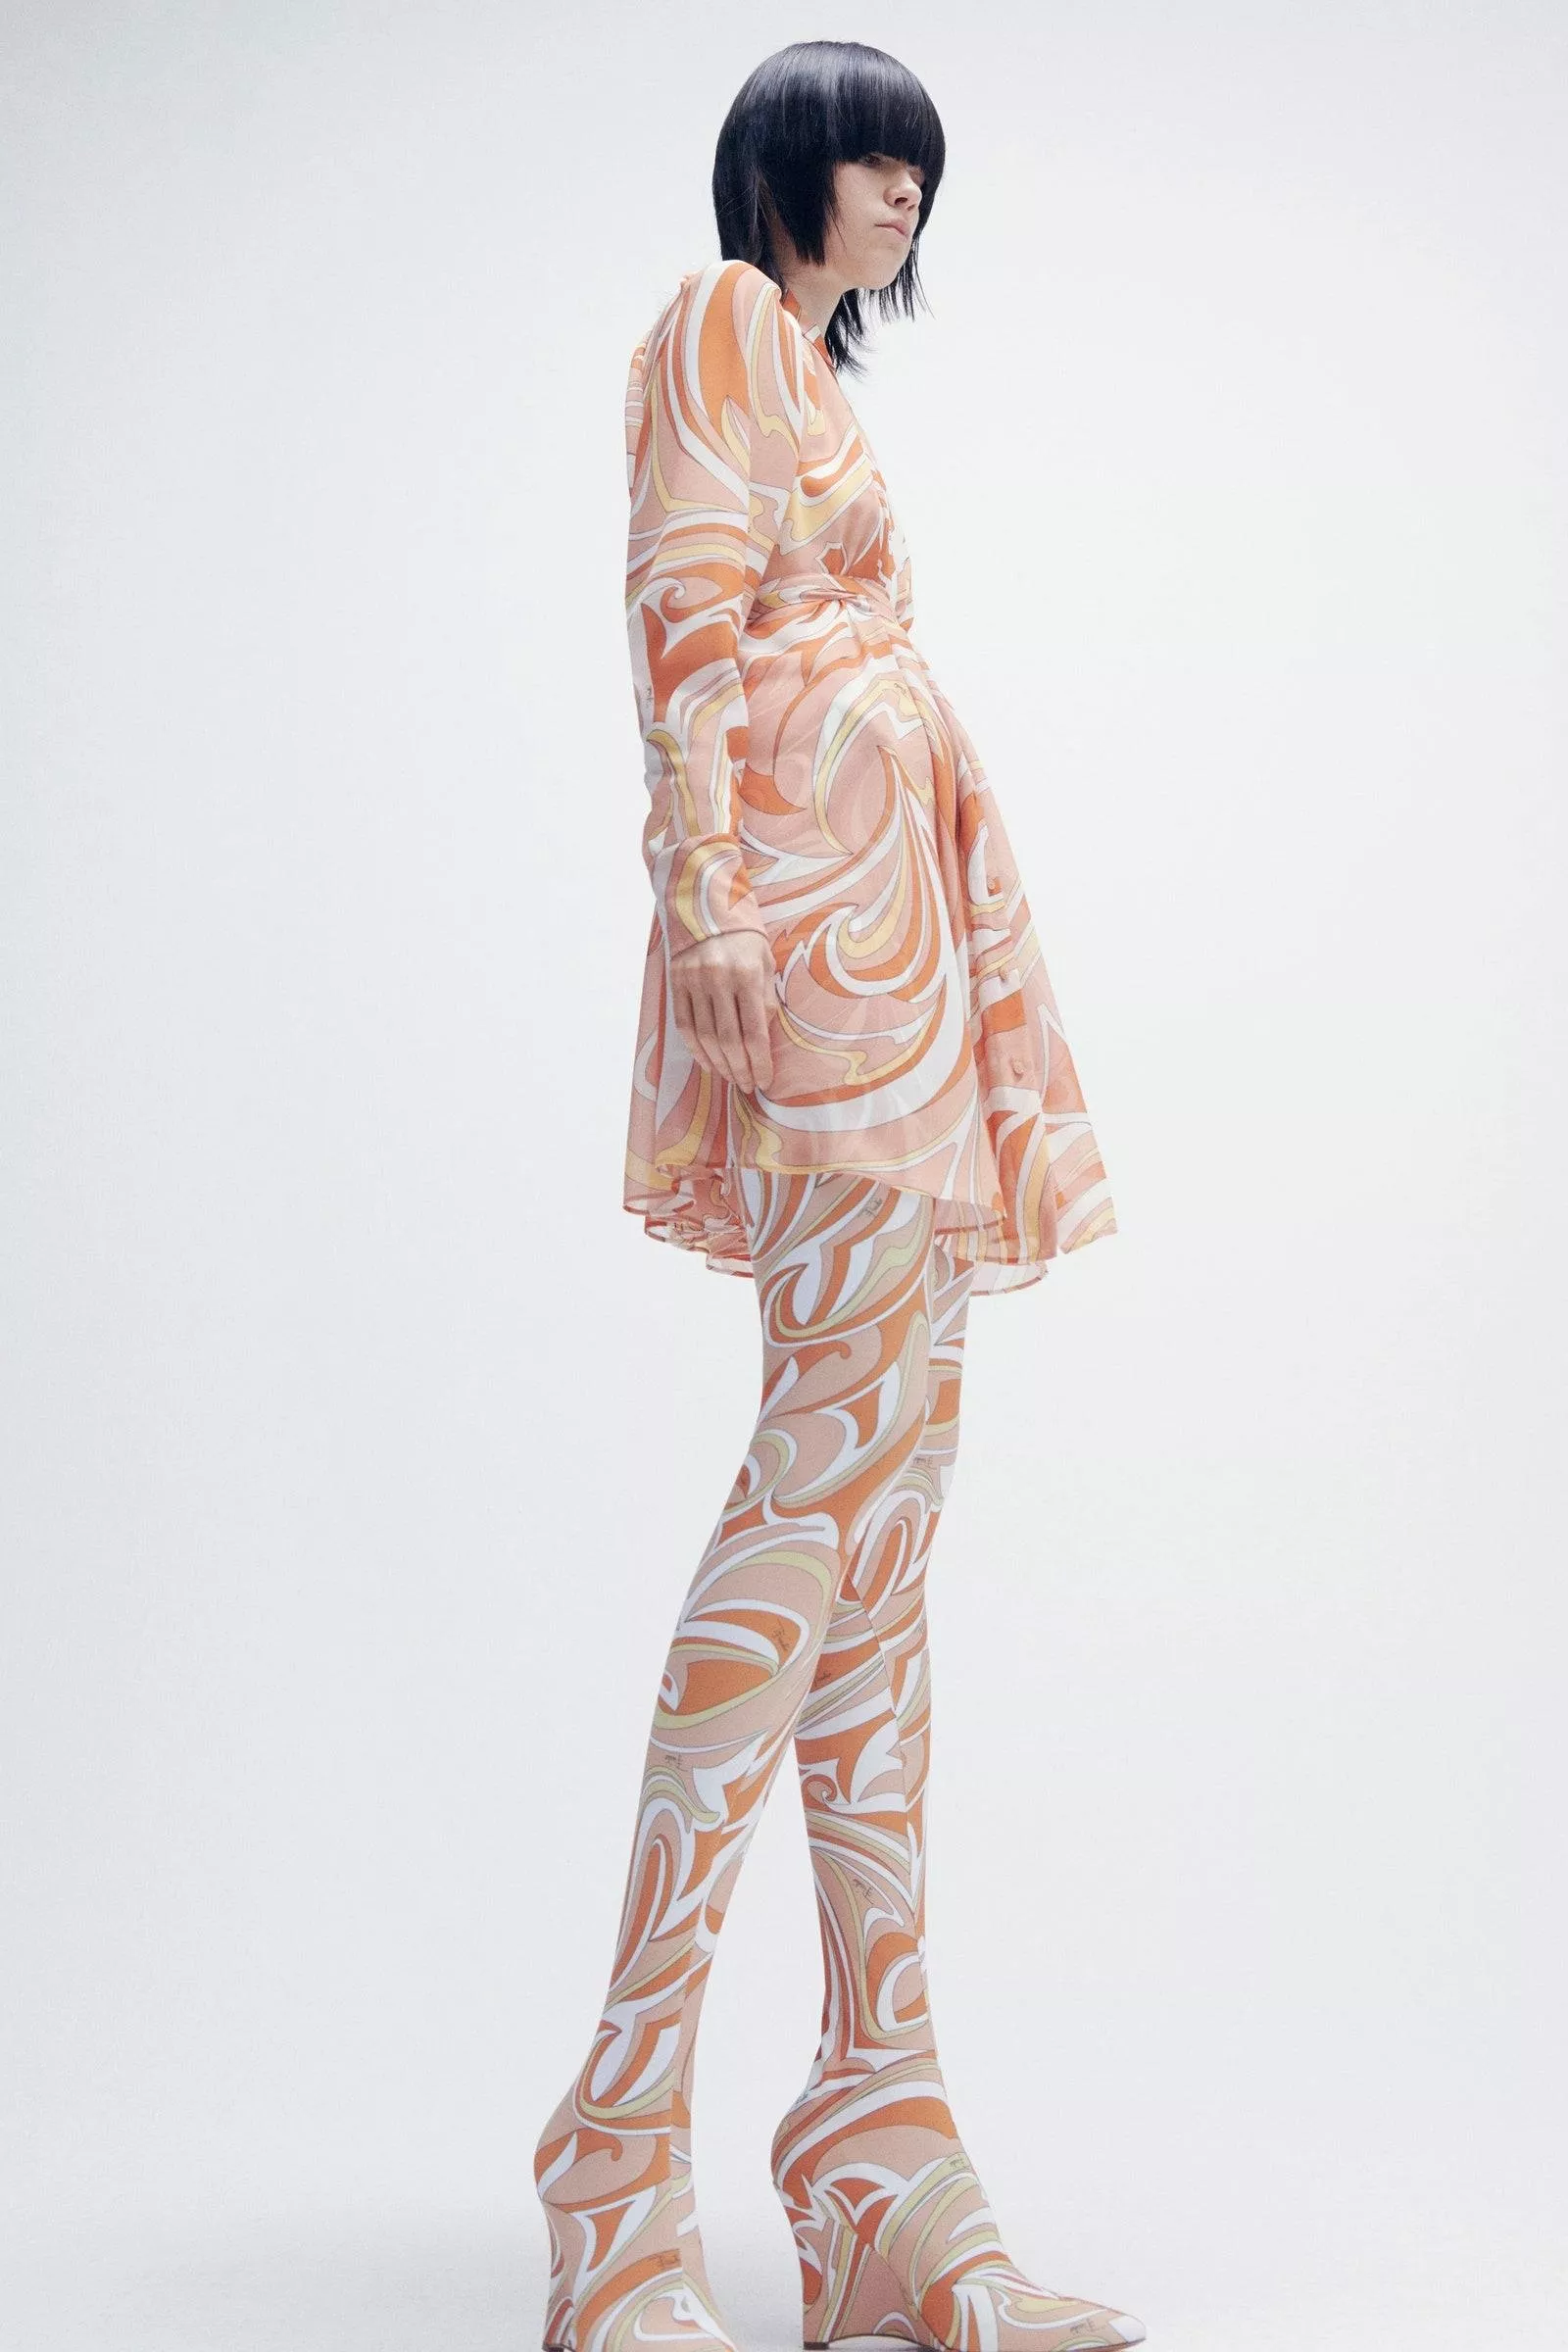 جوارب نايلون طويلة بألوان ملفتة: من أجمل صيحات خريف وشتاء 2021-2022! تسوّقيها